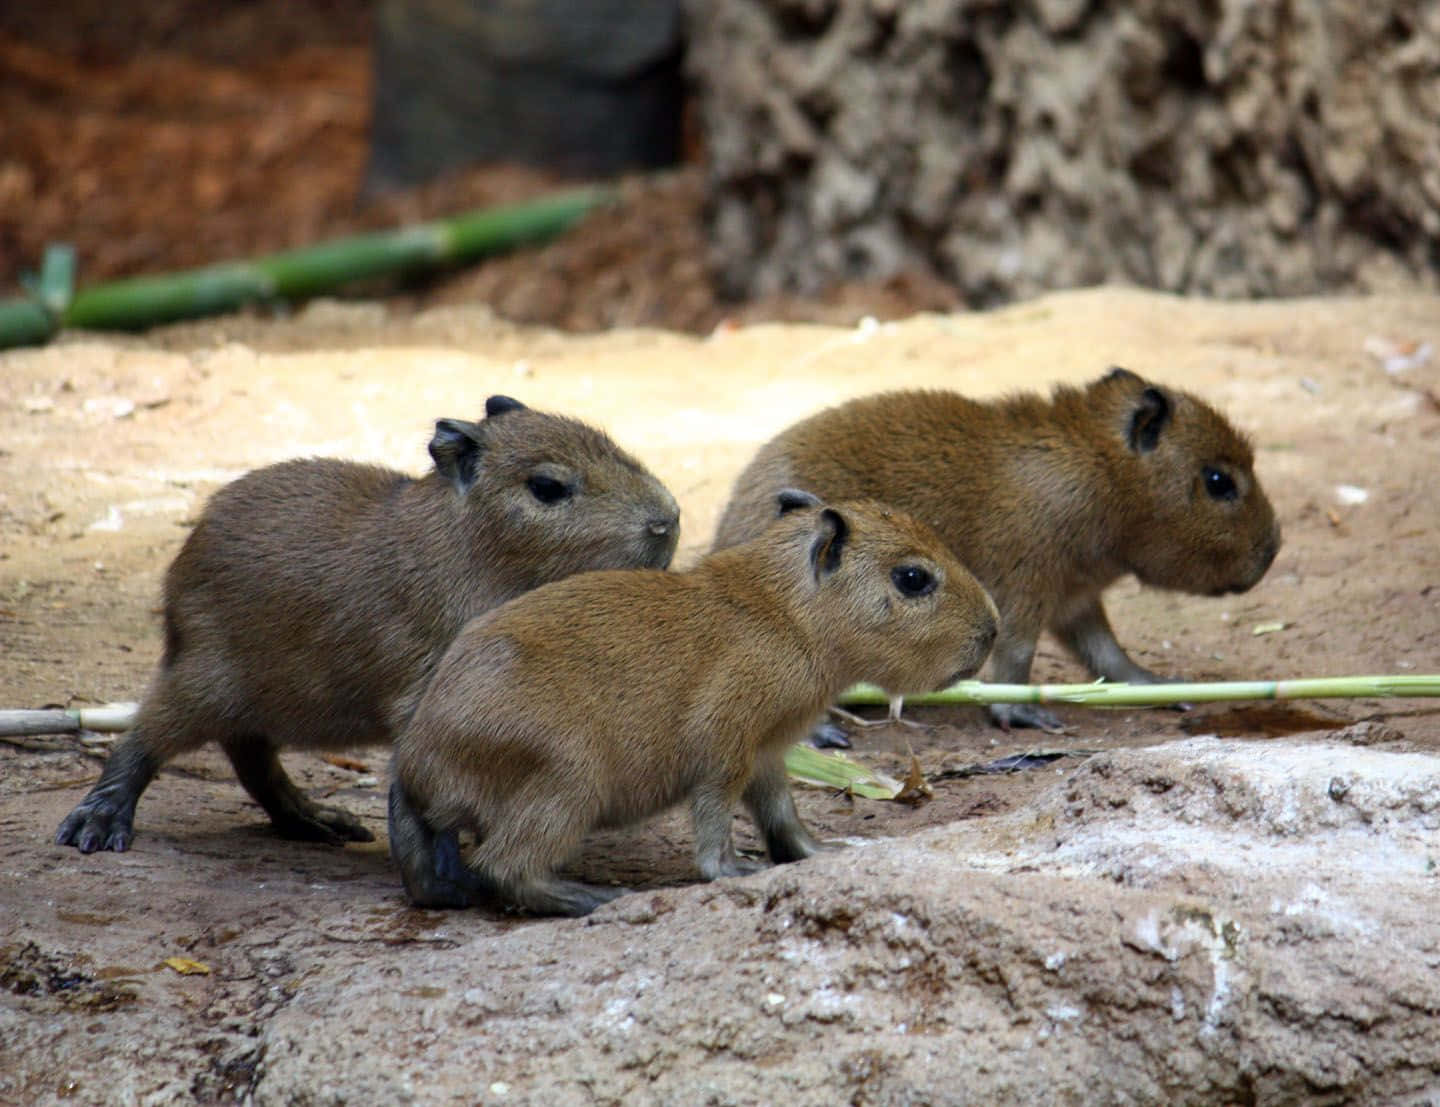 Unacapybara Che Si Sdraia All'ombra Di Una Palma